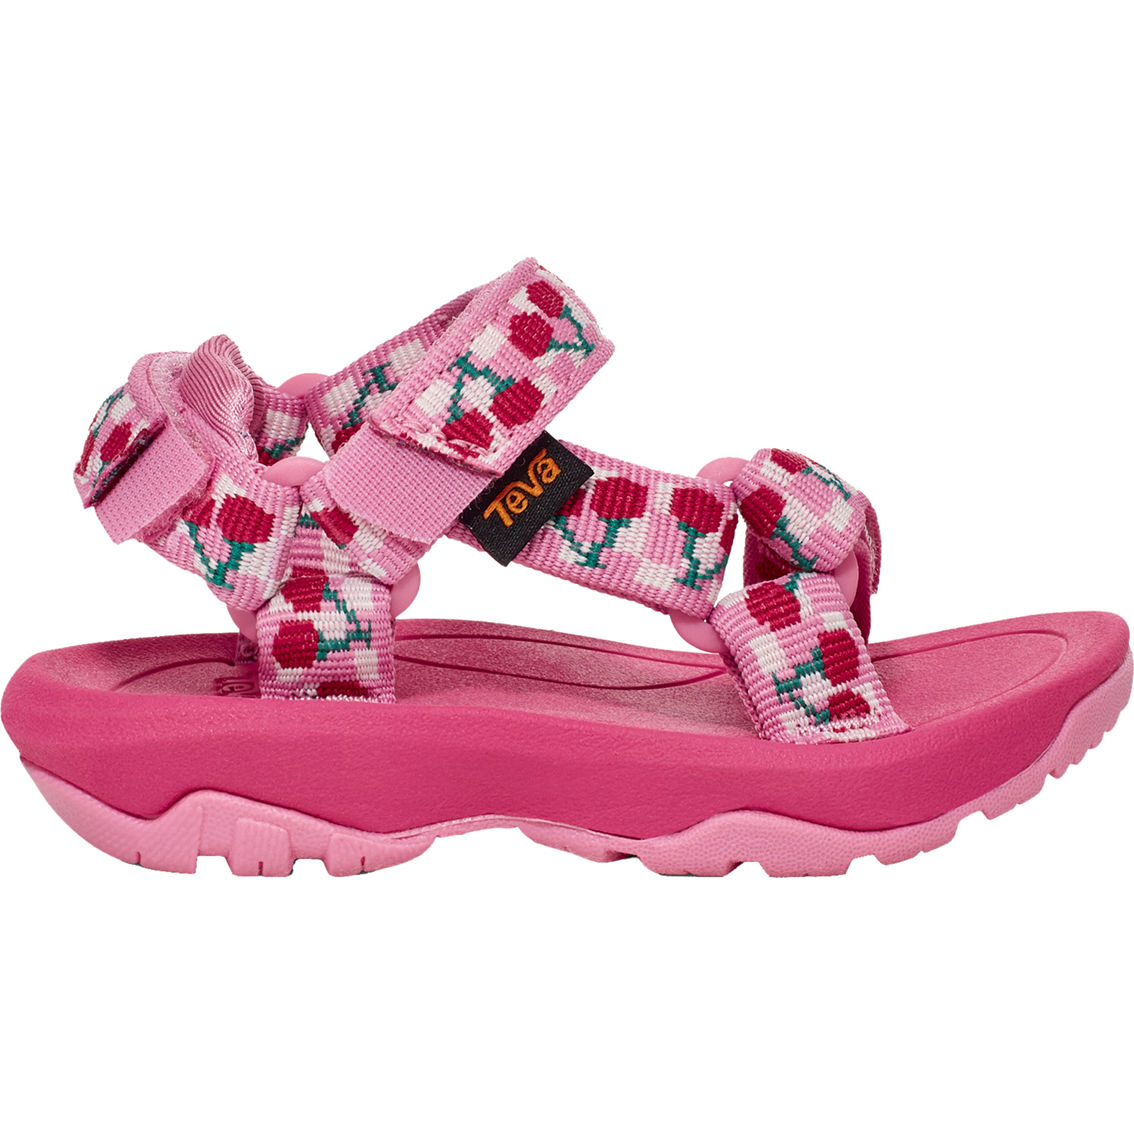 Teva Toddler Girls Hurricane XLT Sandals - Image 2 of 6